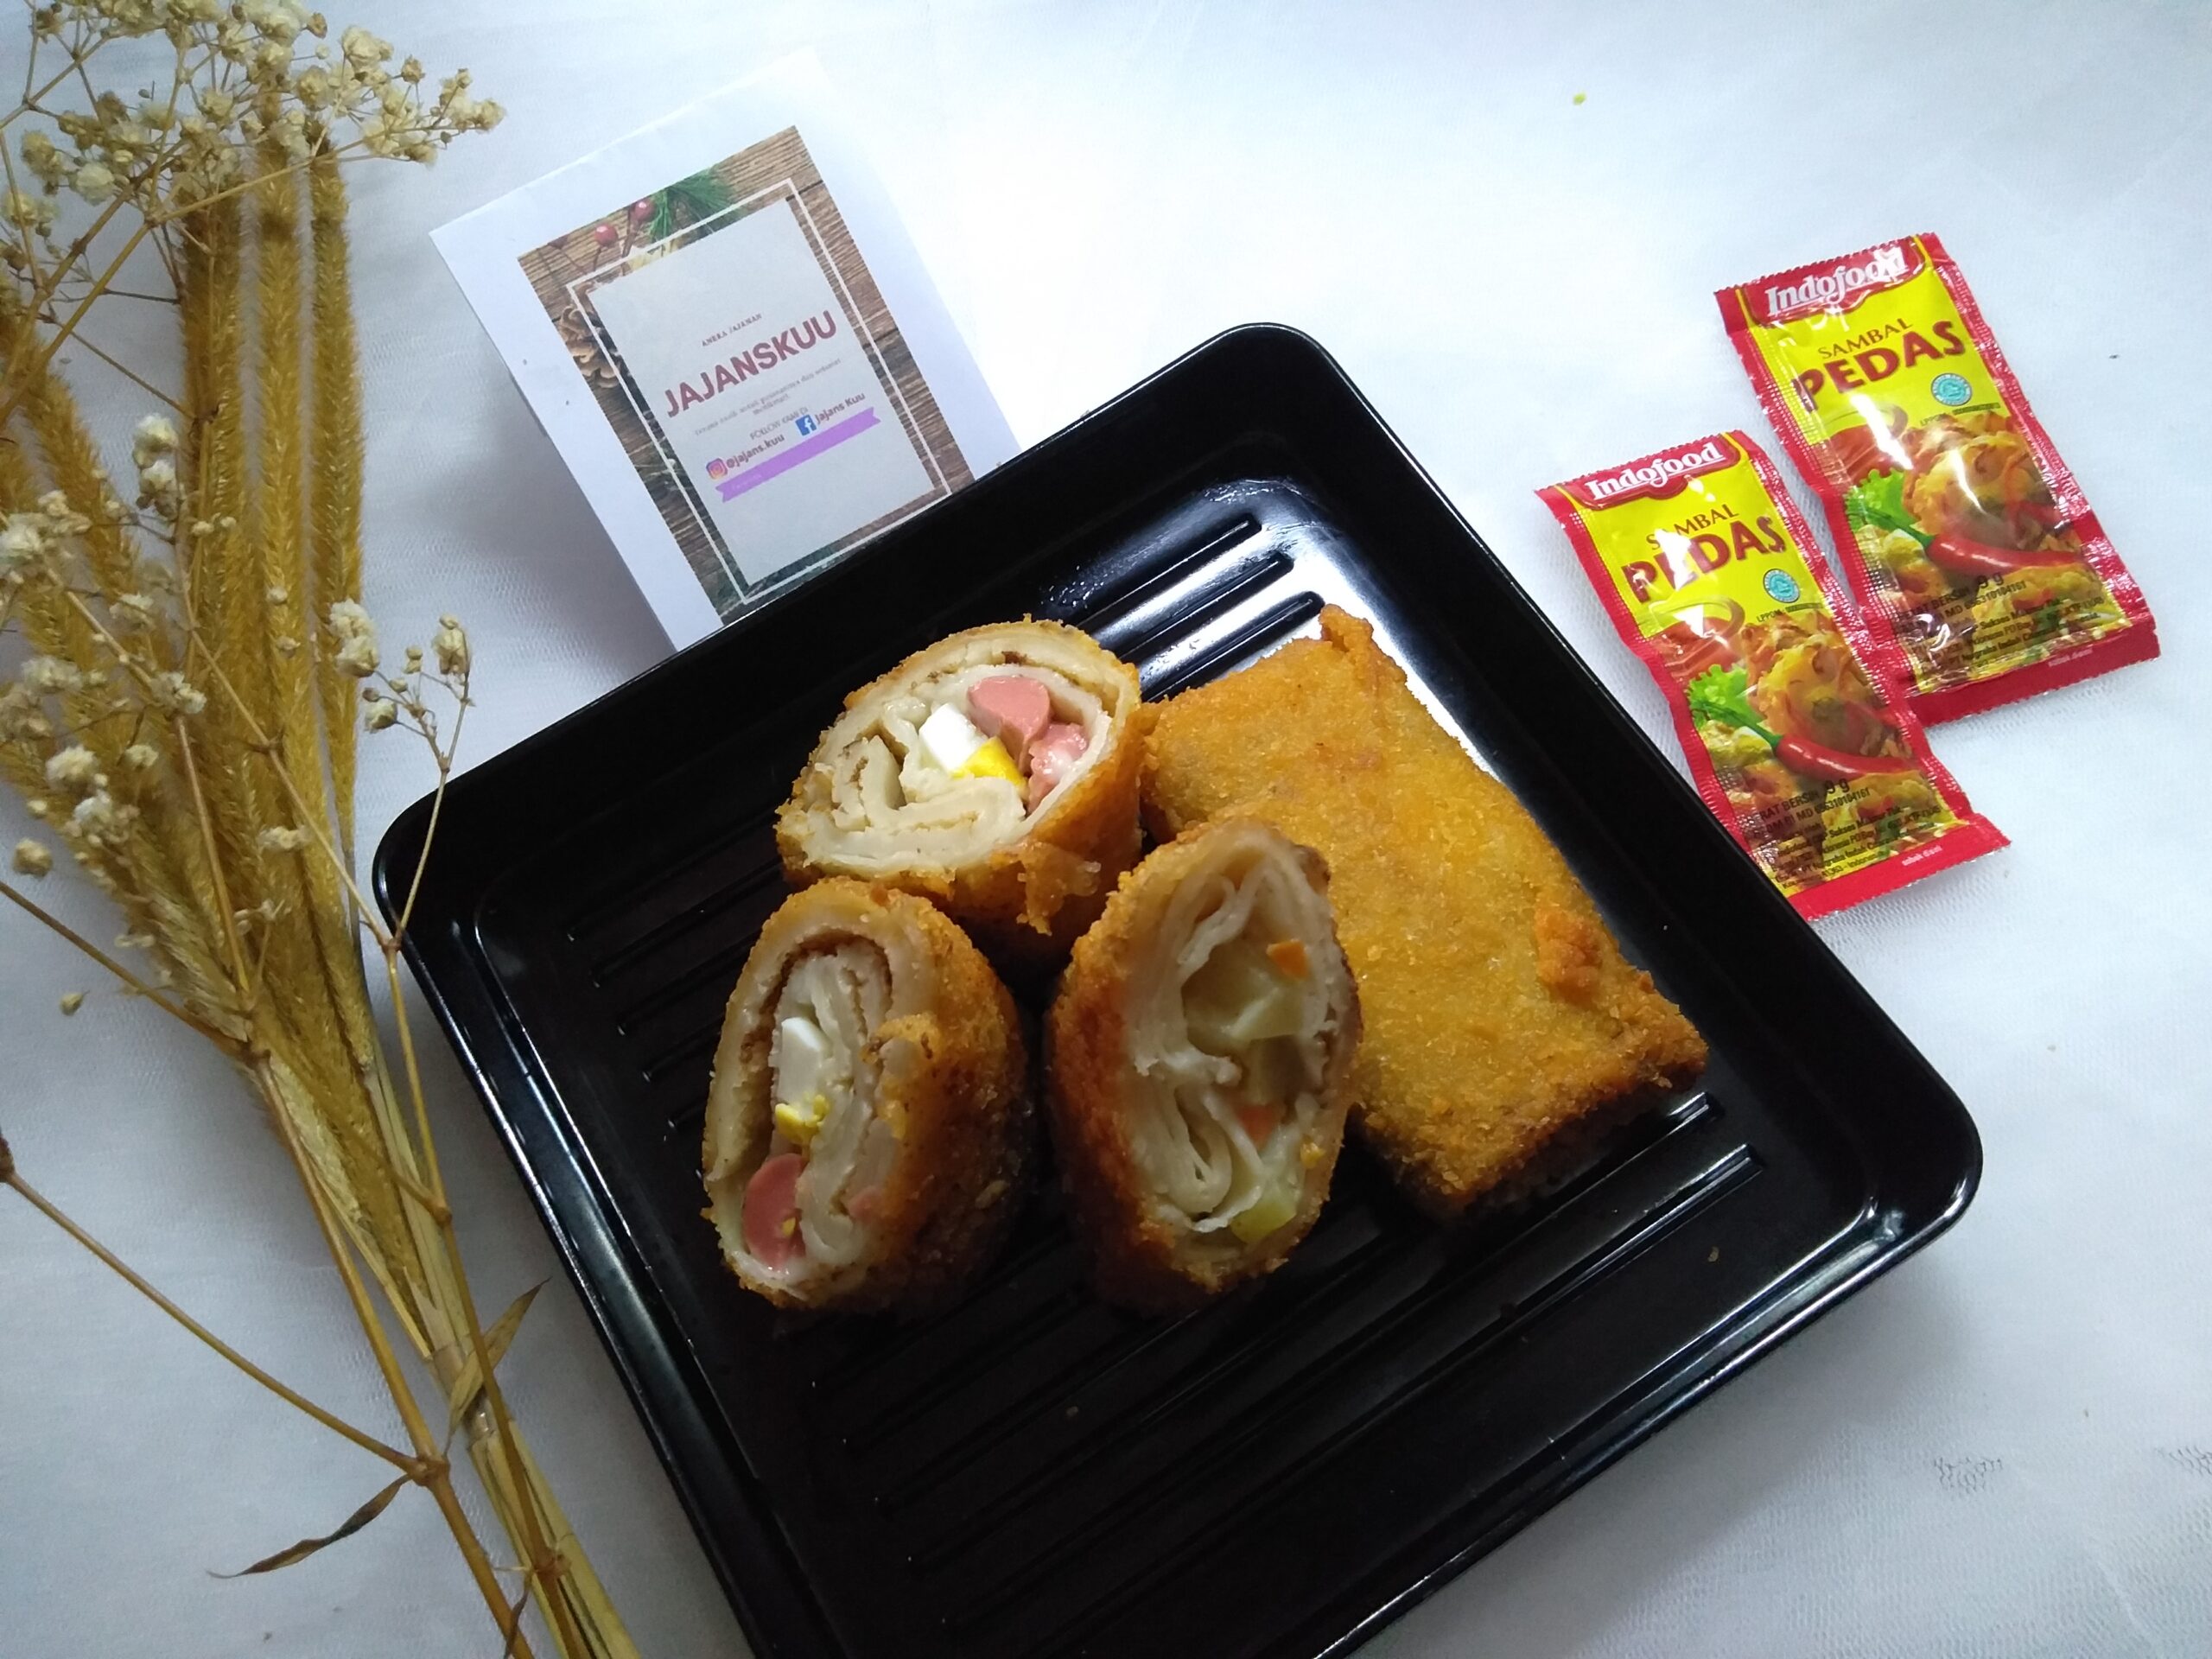 Hadirkan Makanan Tradisional Di Tengah – Tengah Gempuran Makanan Modern, Mahasiswa Di Surabaya Membuka Usaha Bisnis Kuliner Risoles Homemade